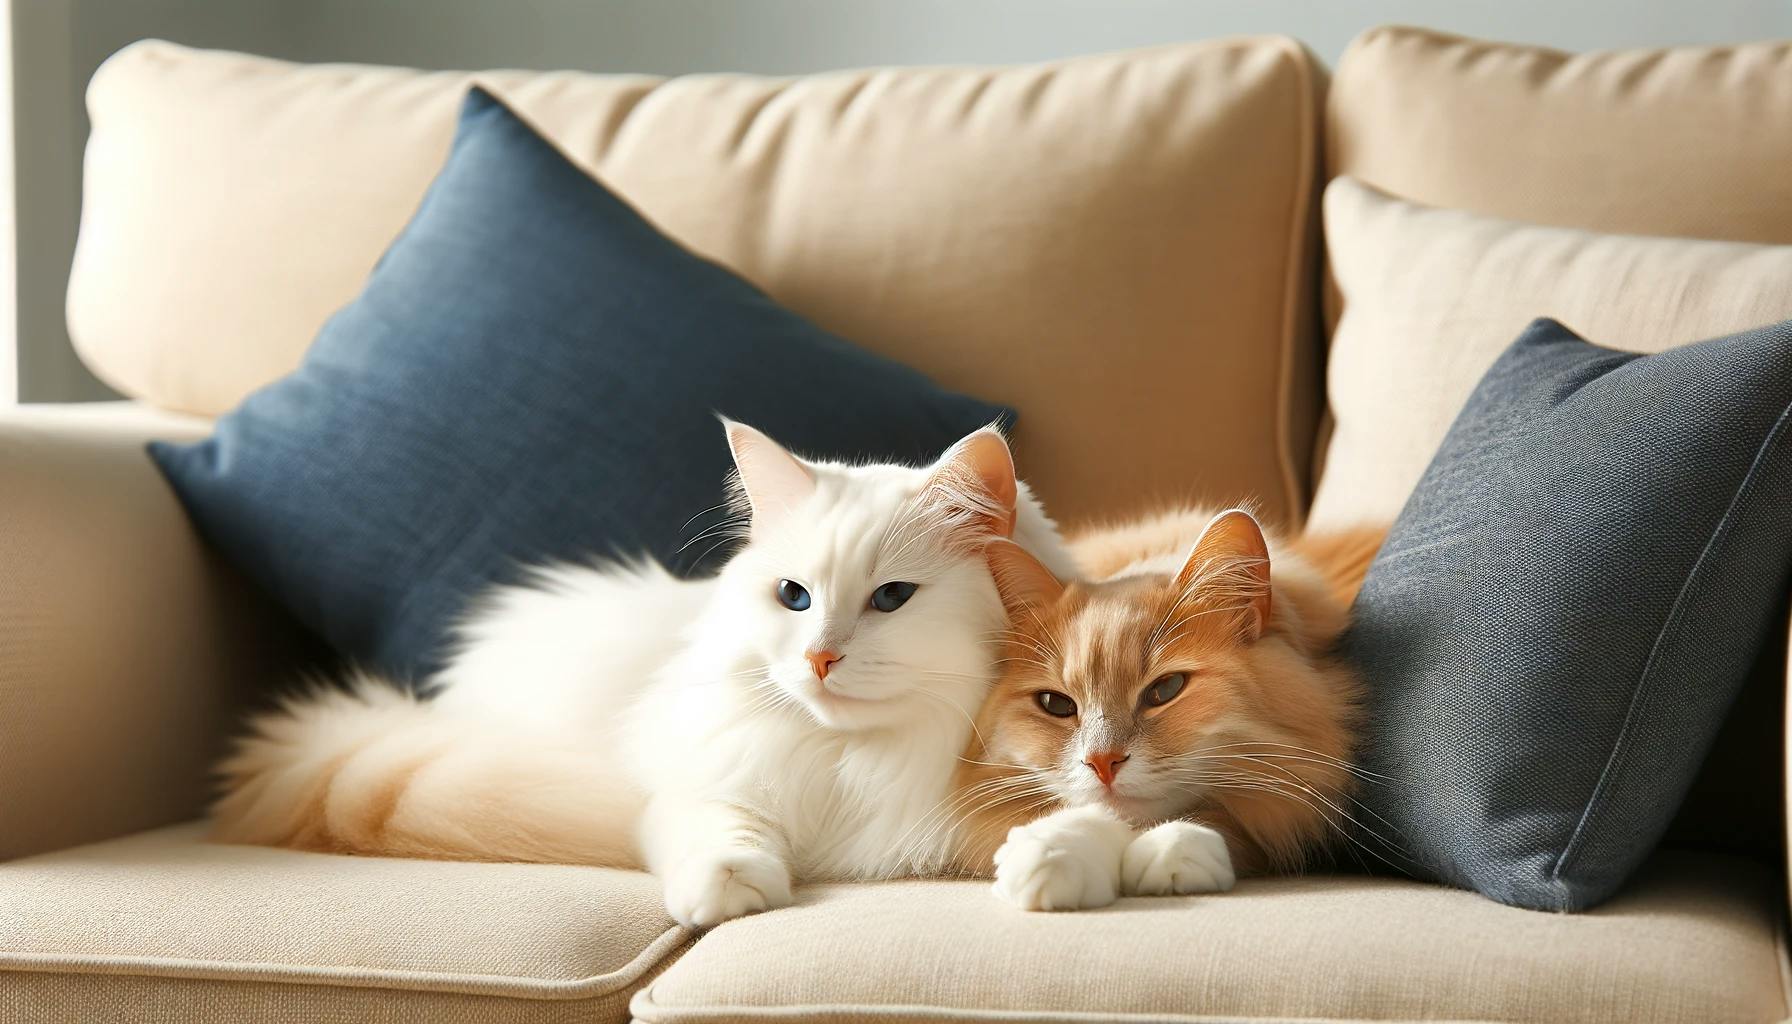 Två försäkrade katter som ligger och sover i soffan.